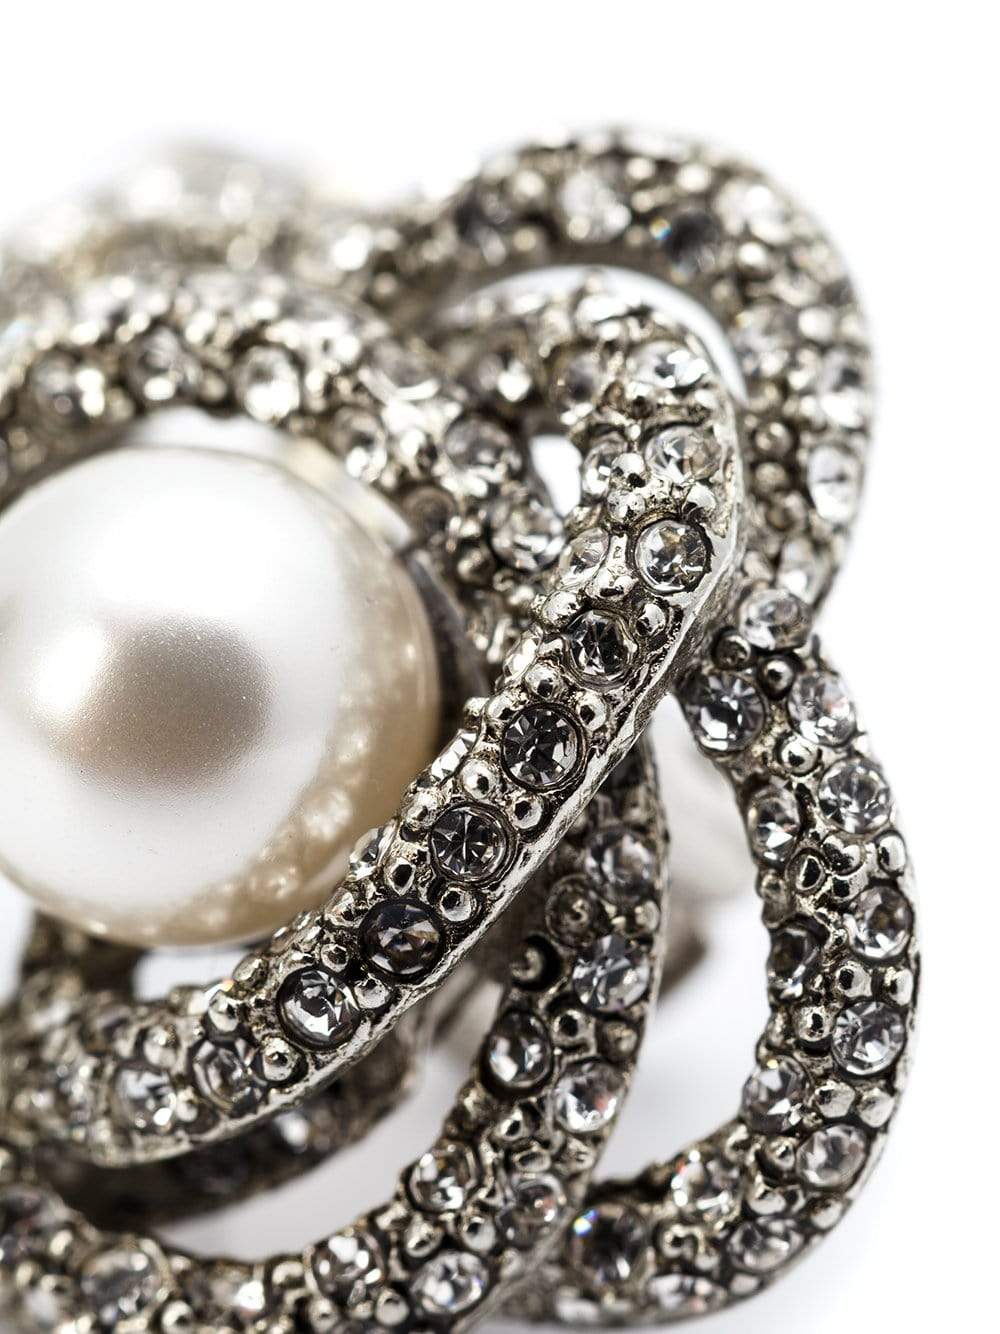 Pearl Button Clip Earrings JEWELRYBOUTIQUEEARRING OSCAR DE LA RENTA   